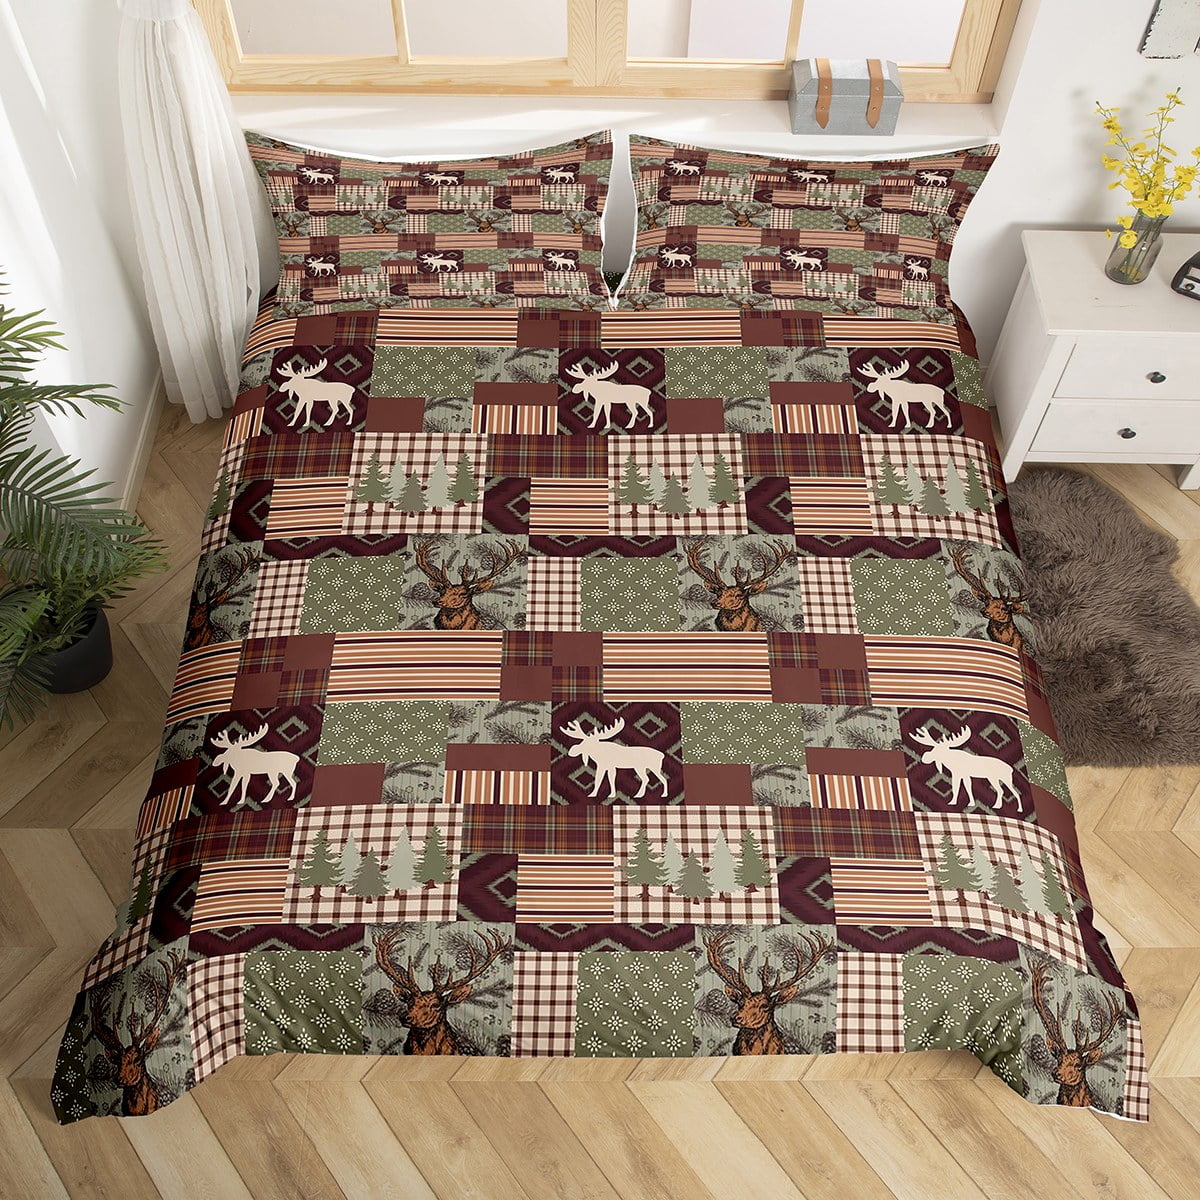 Handmade Deer Hide Bed Cover : r/ATBGE